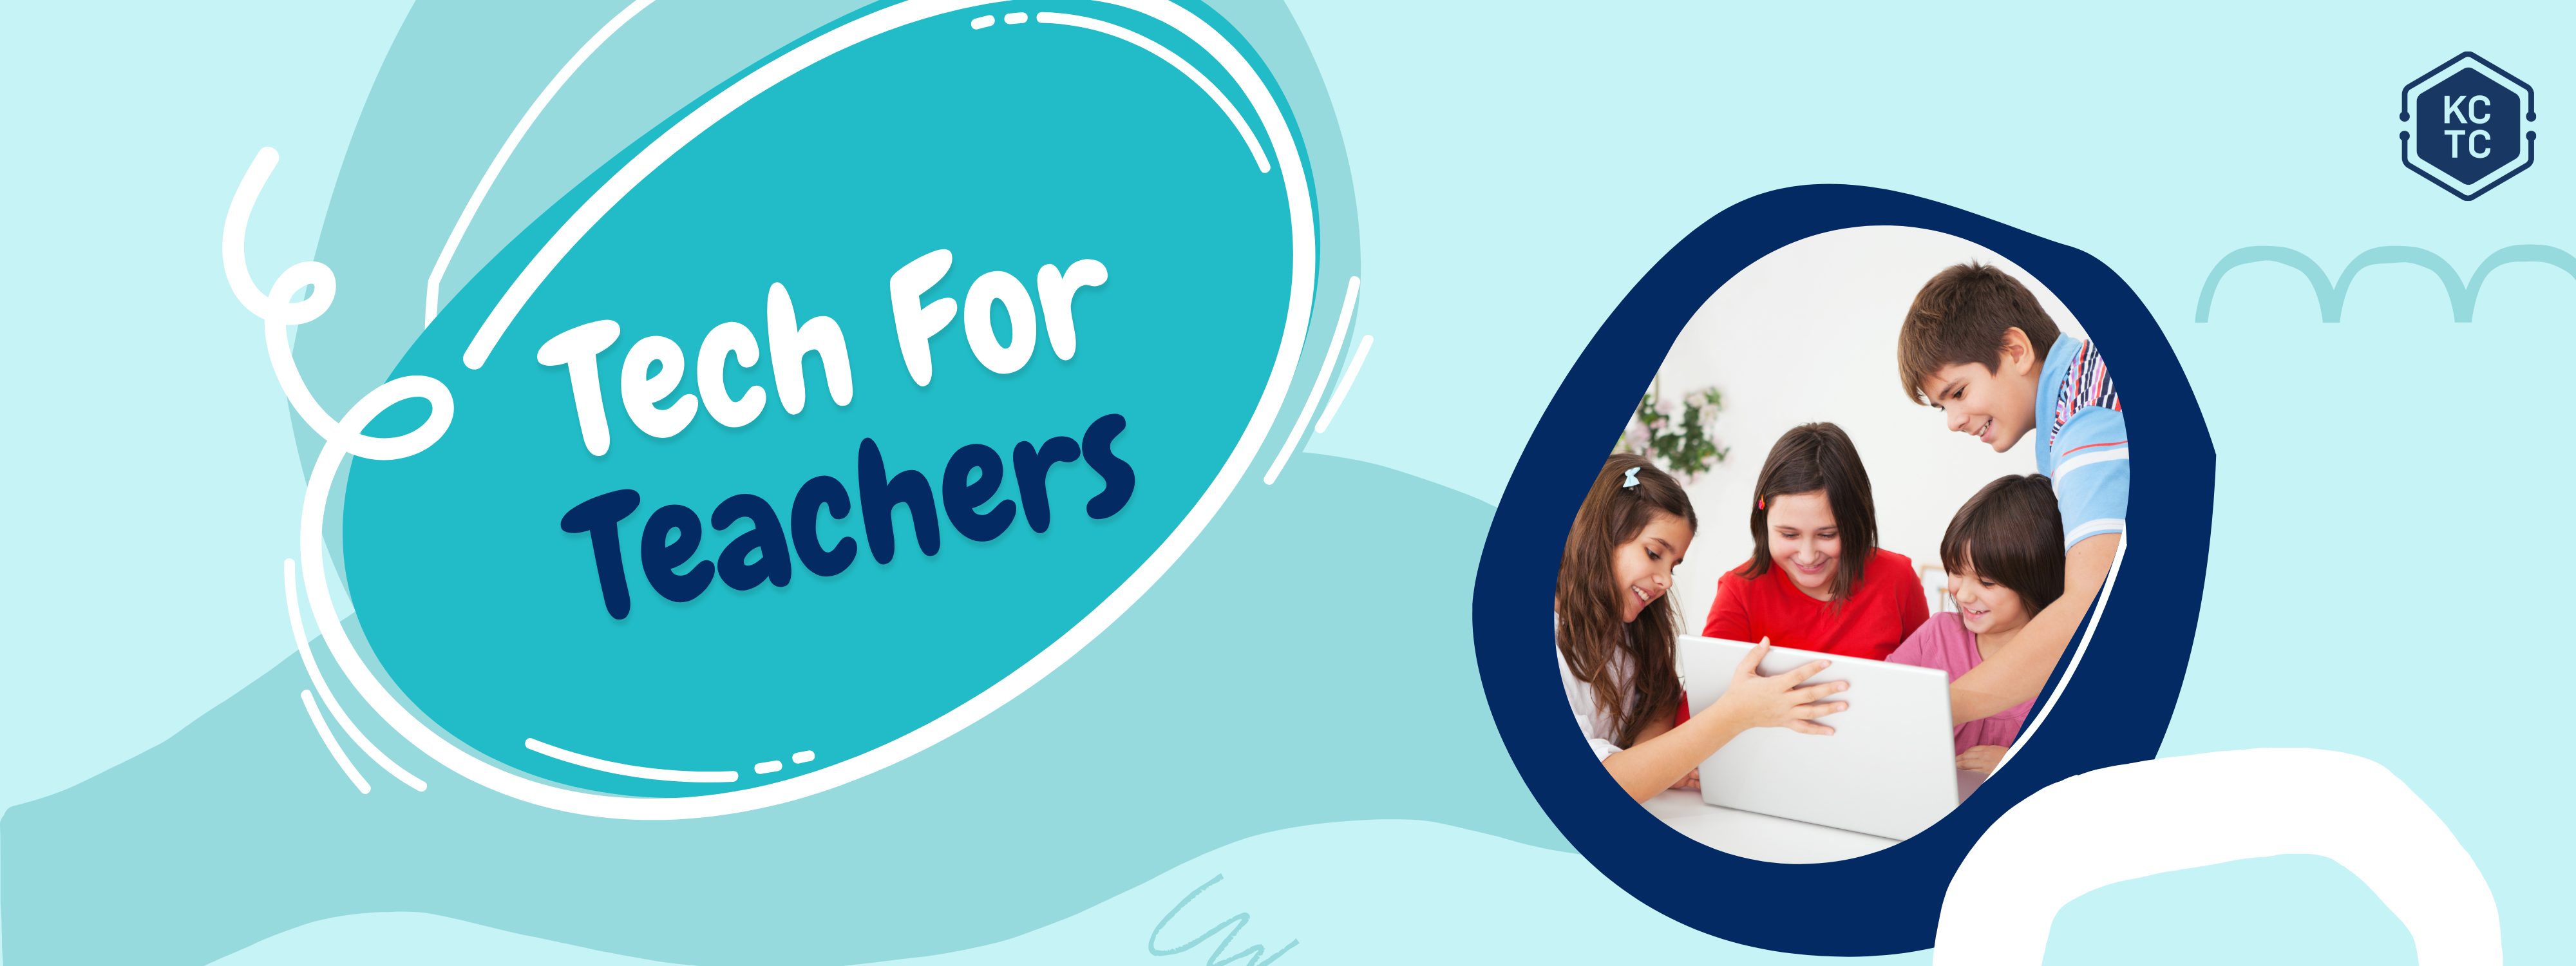 Tech For Teachers Website Banner 2